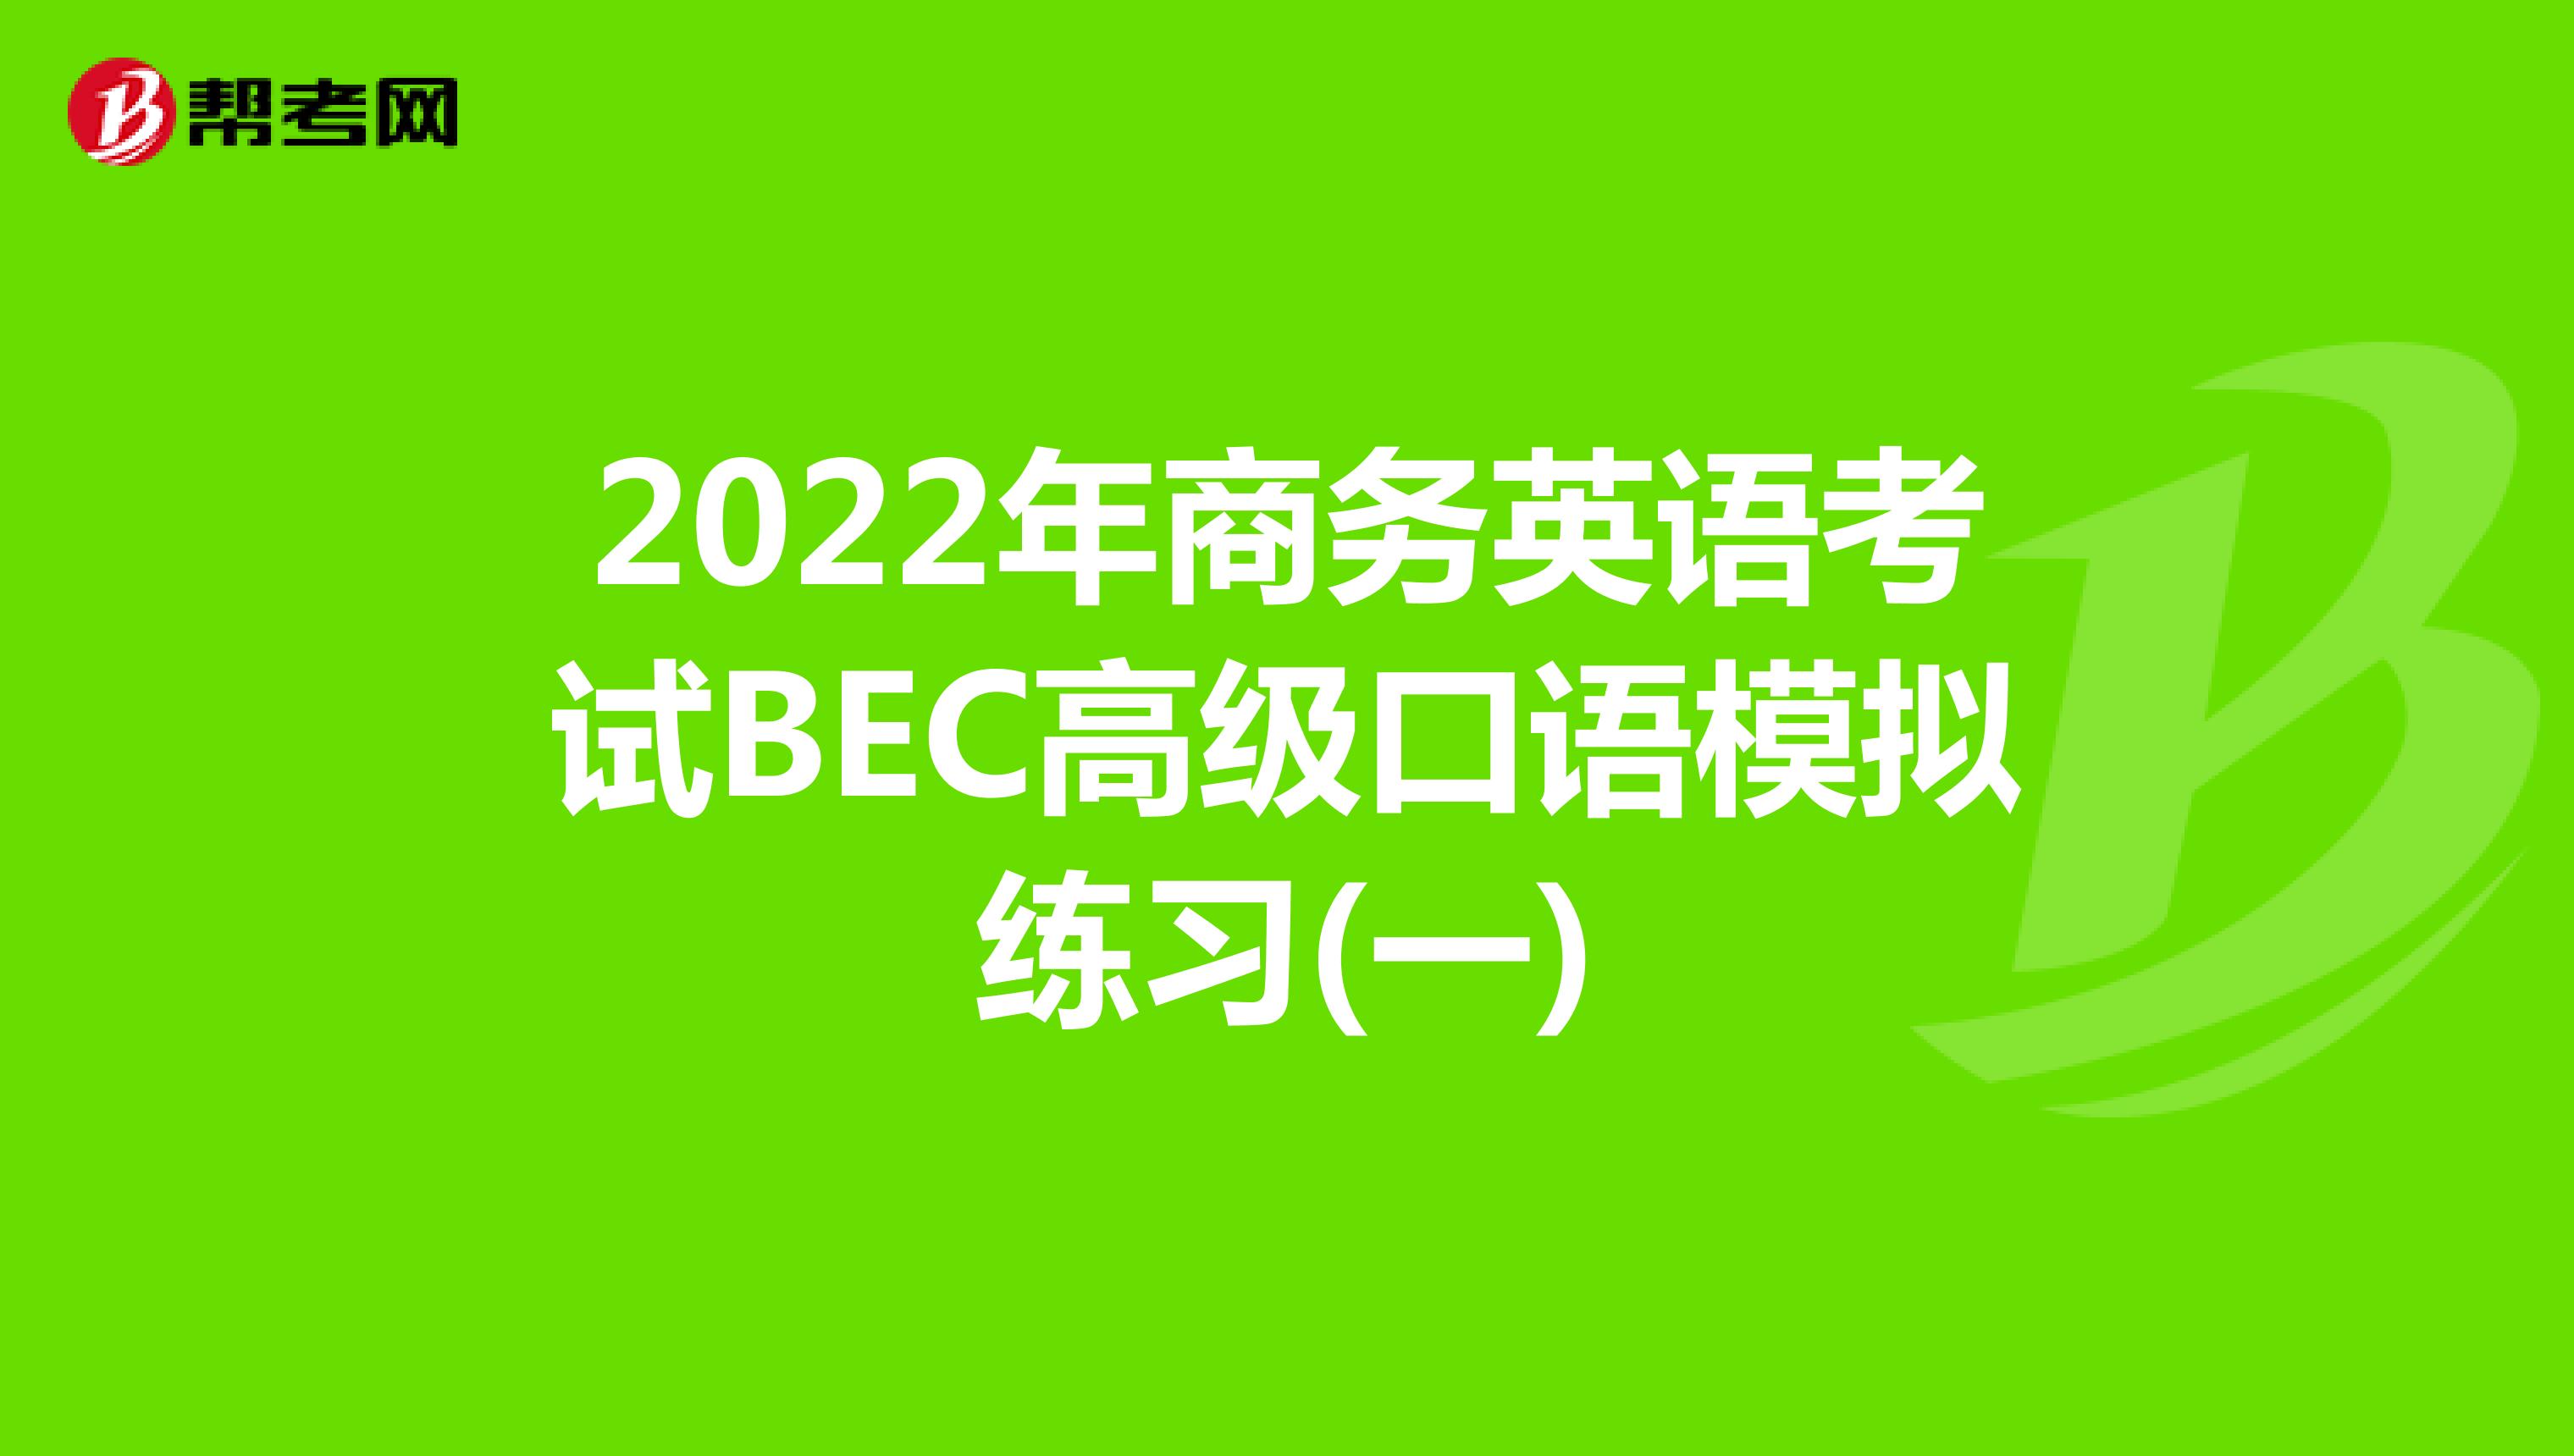 2022年商务英语考试BEC高级口语模拟练习(一)